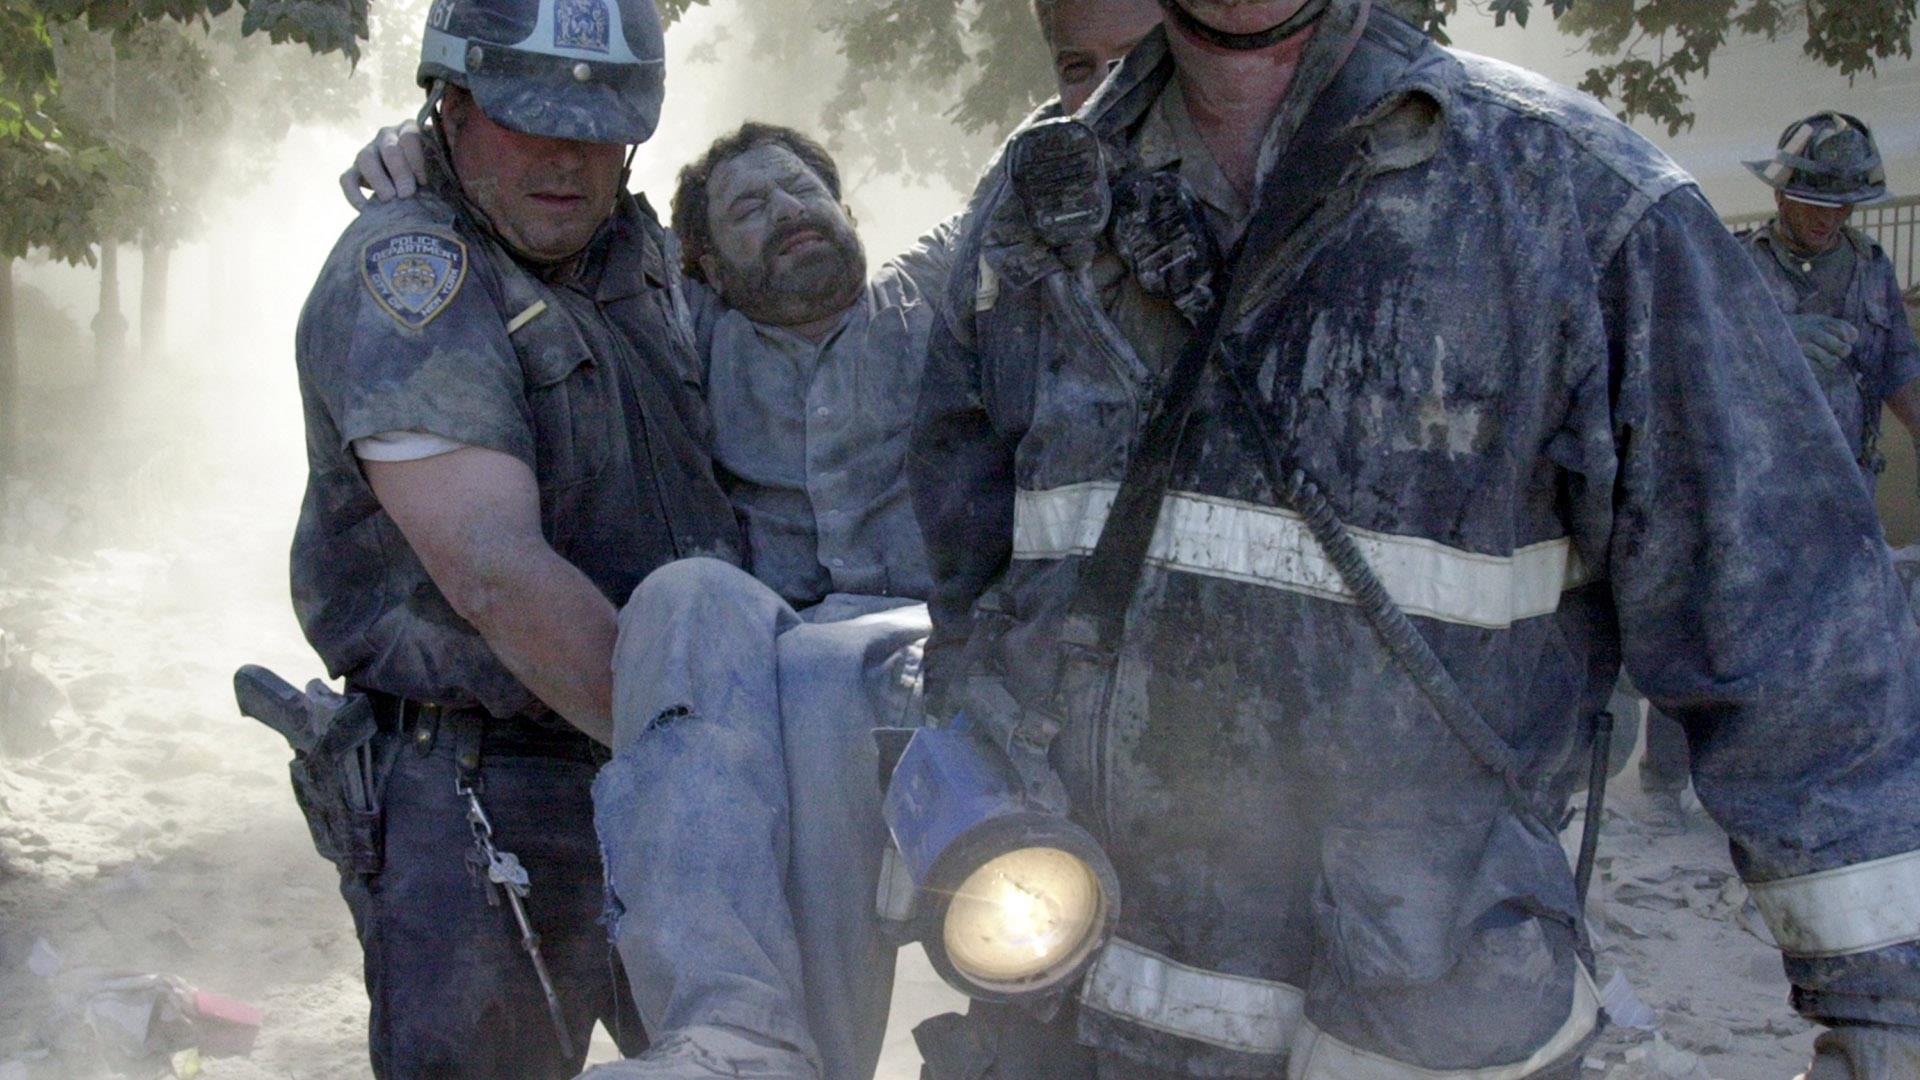 Количество жертв теракта 11 сентября. 9.11.2001 Теракт сержант Маклафлин. Теракт в США 2001 башни Близнецы. Башни Близнецы 11 сентября жертвы.